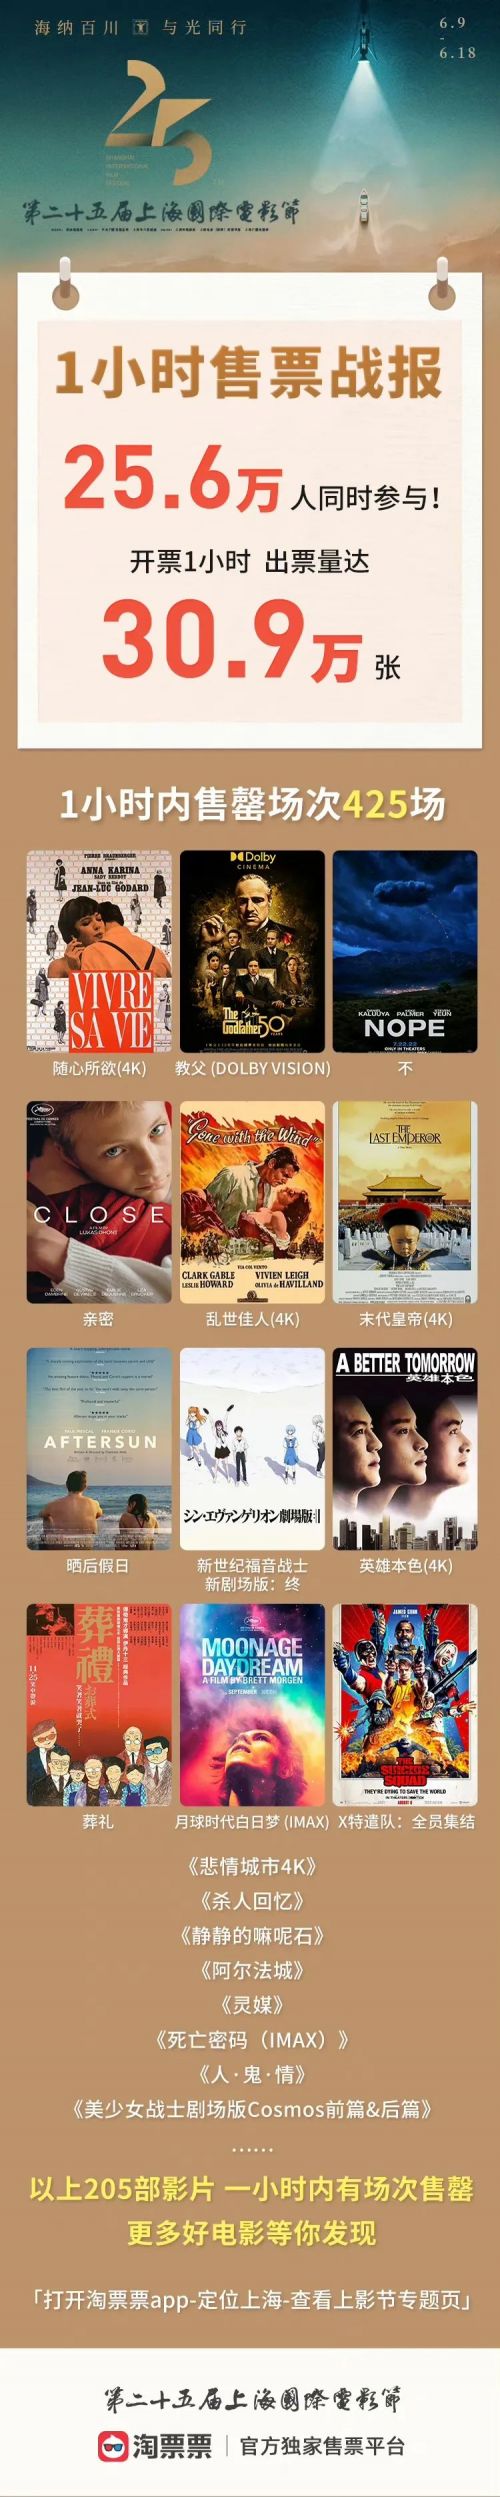 第25届上海国际电影节开启网络售票 1小时出票超30万张